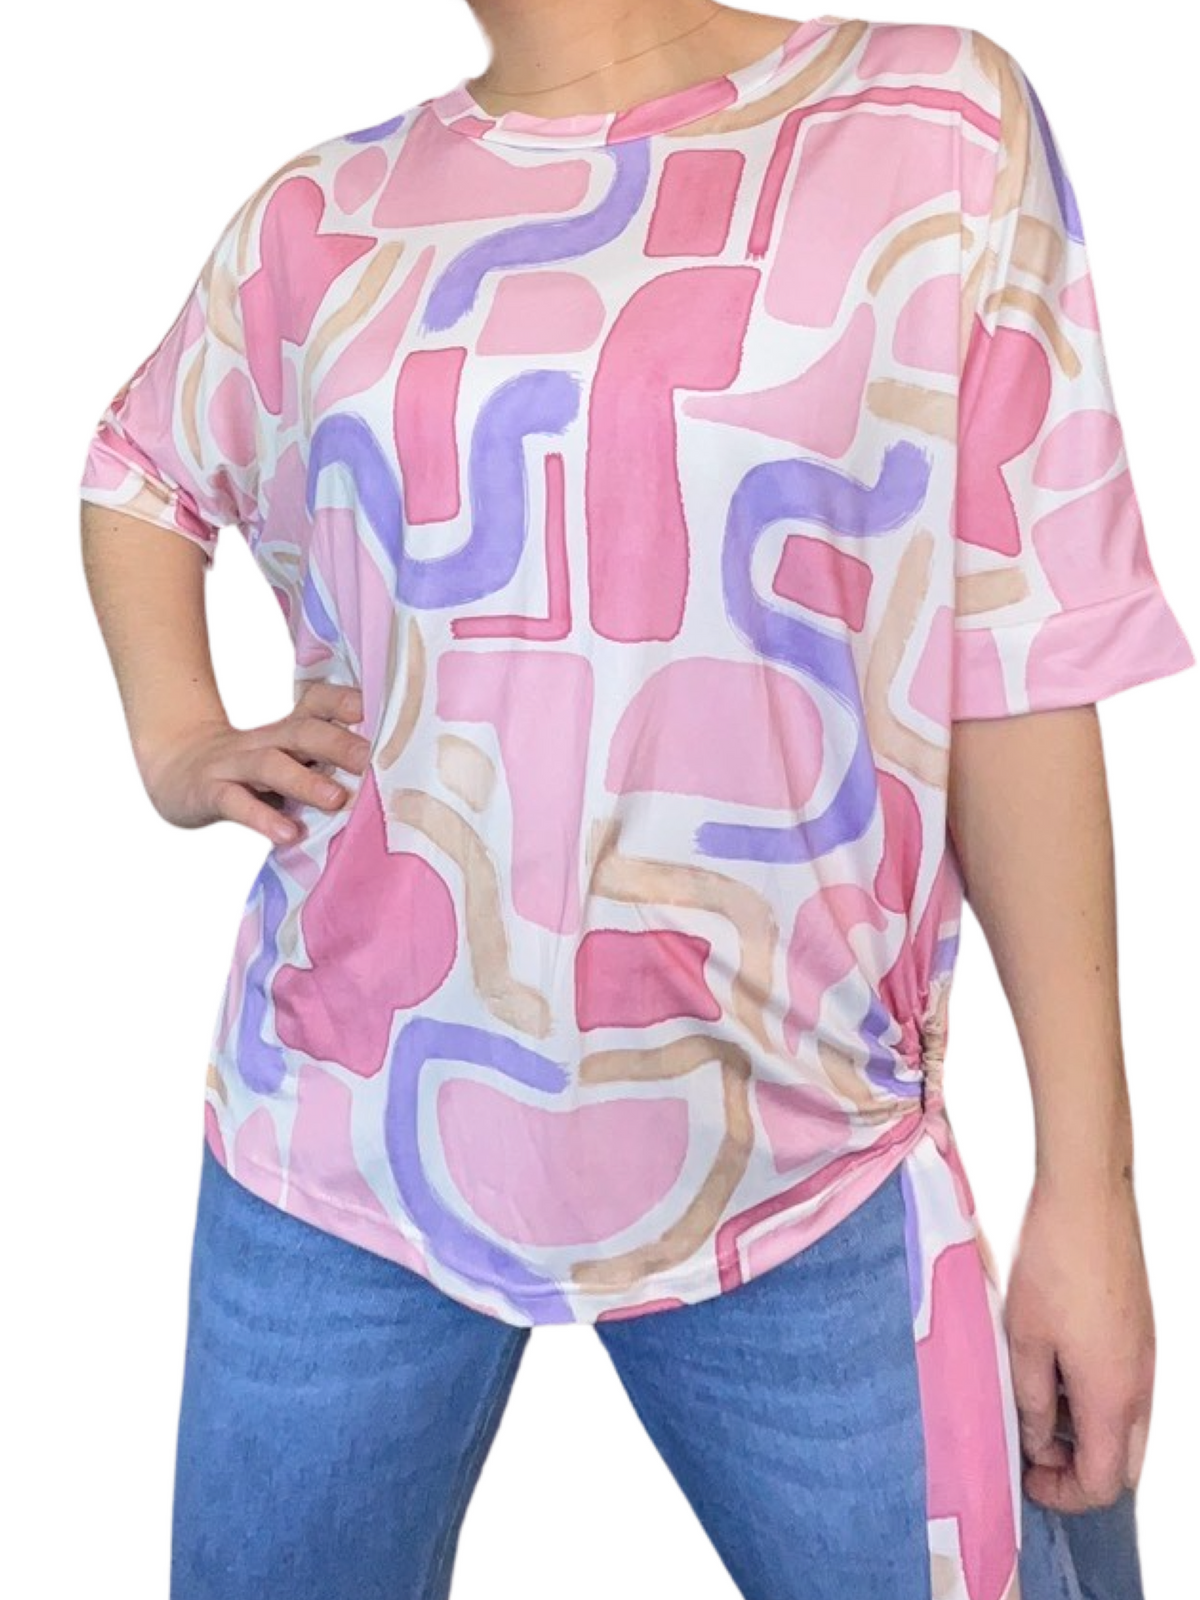 T-shirt femme avec imprimé géométrique rose, lilas & brun avec jeans.